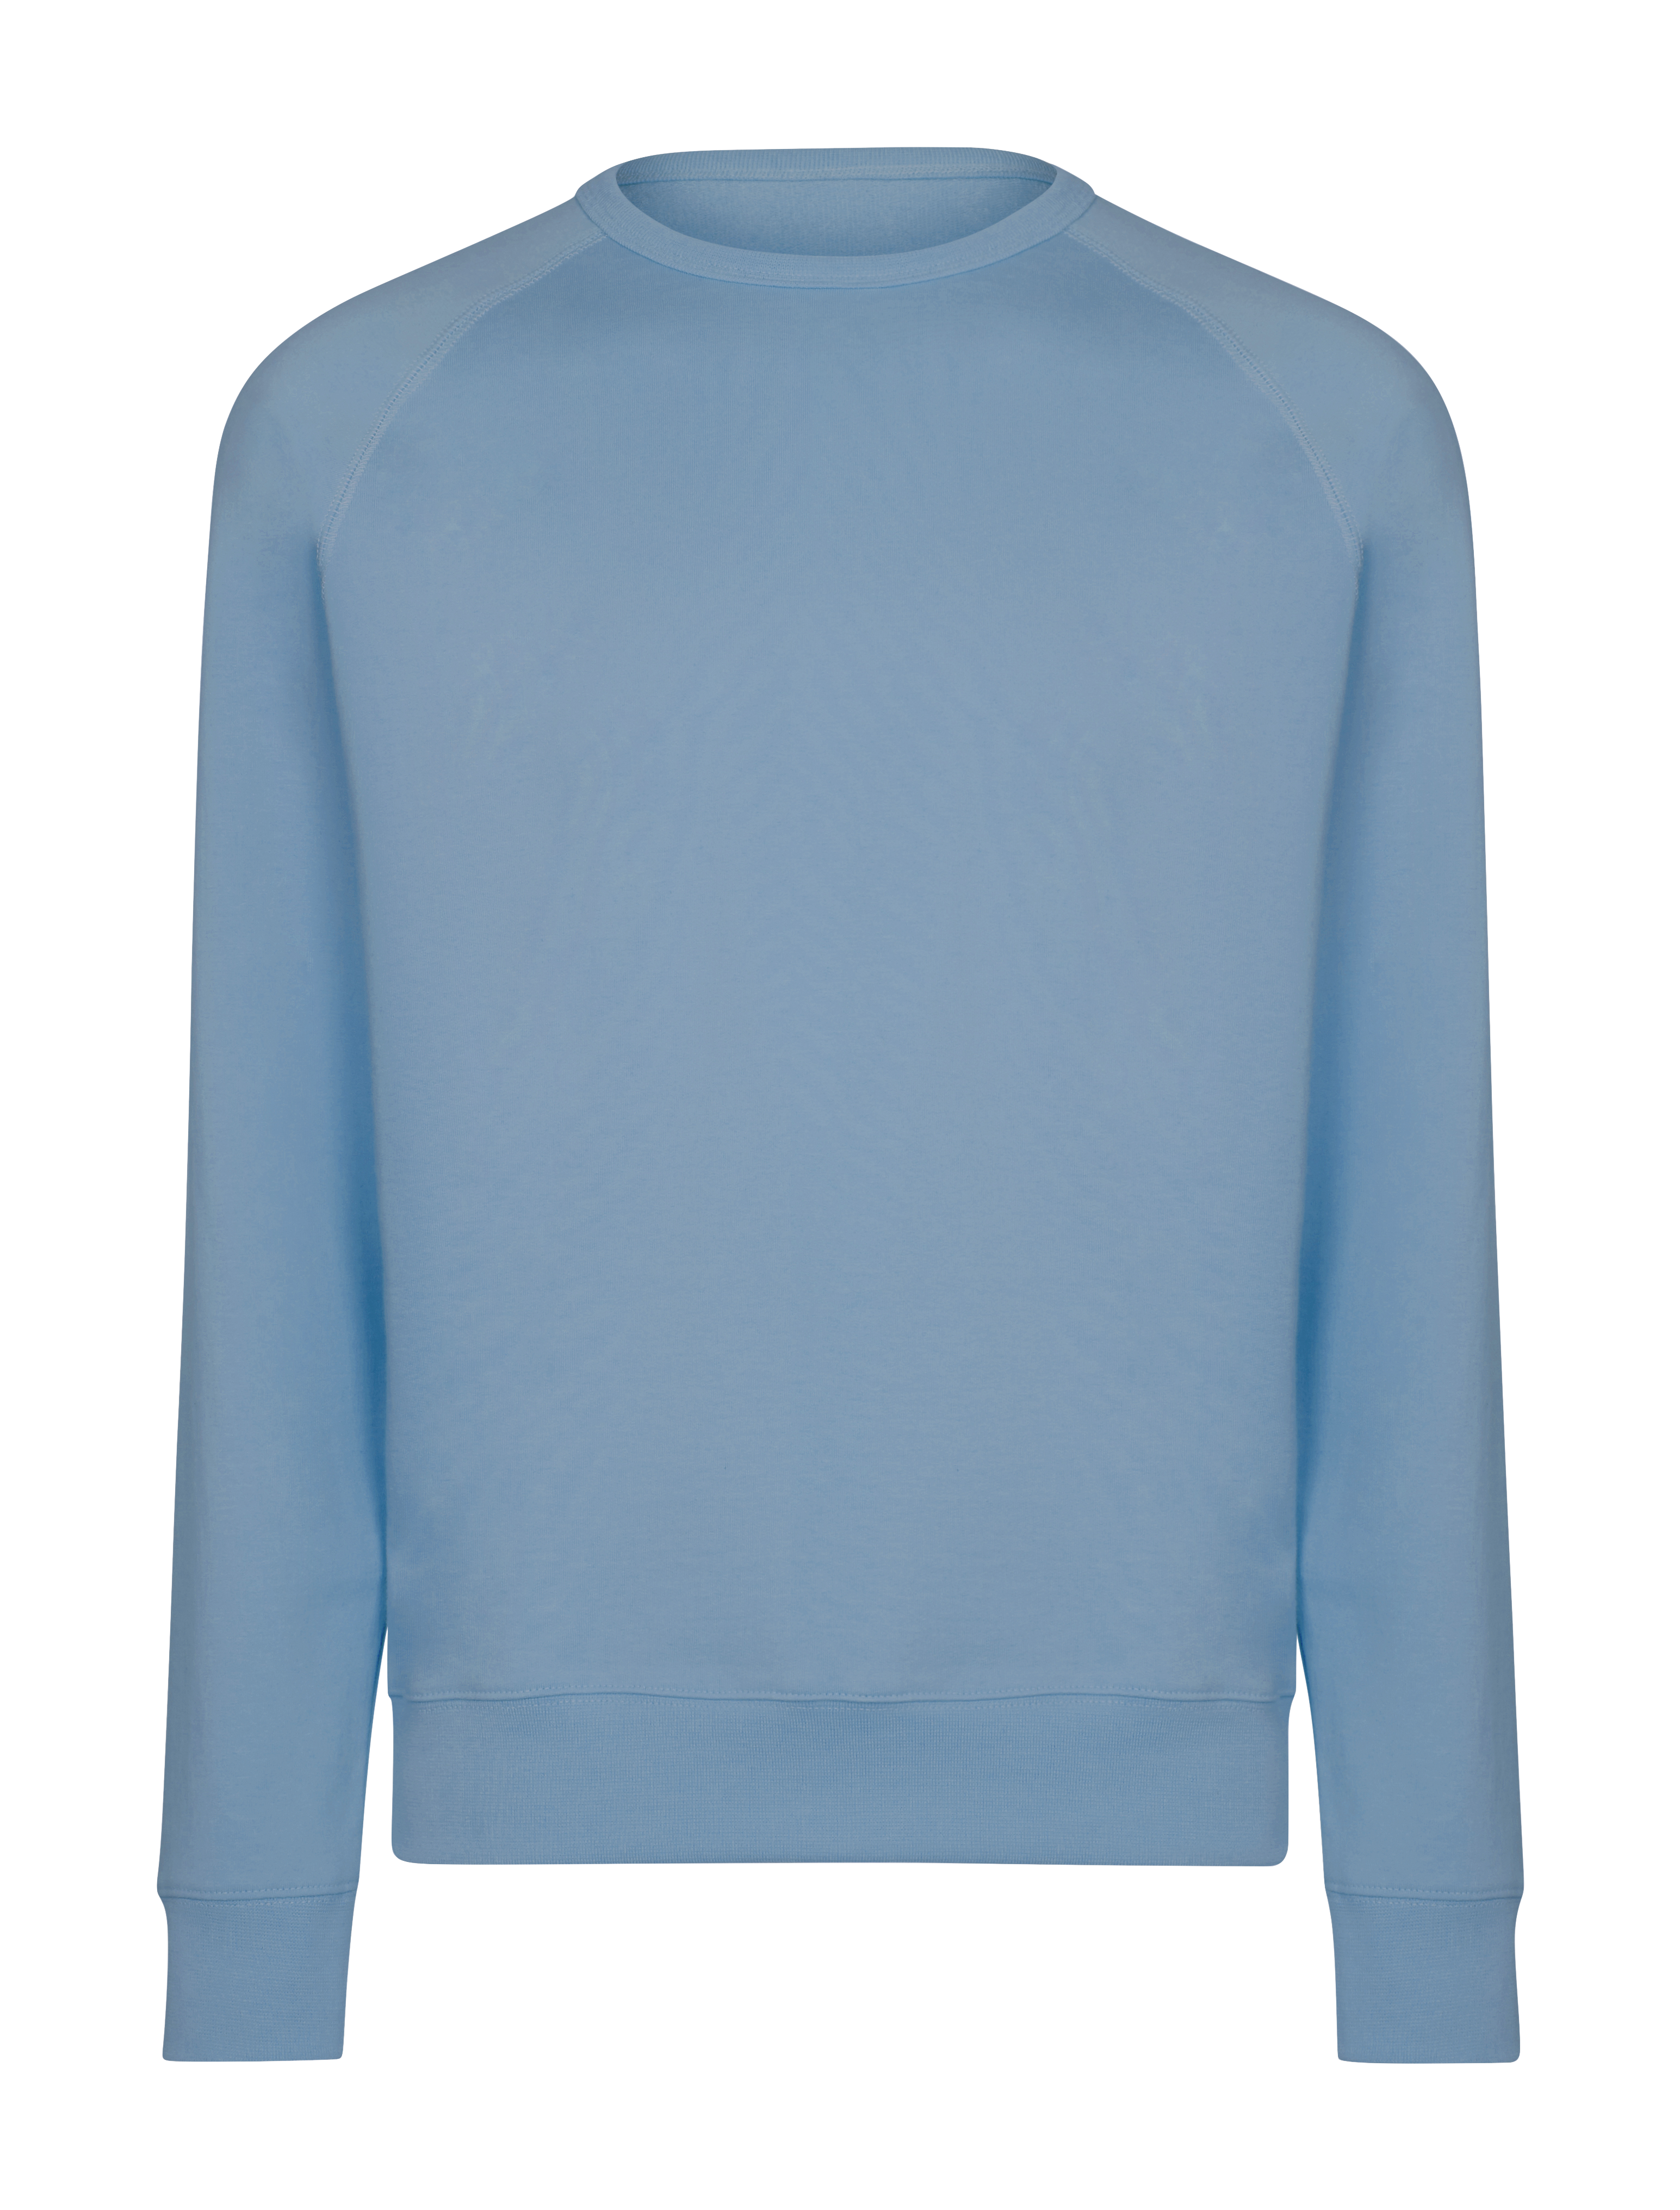 Hemingsworth  Blue Raglan Sweatshirt - Made in England